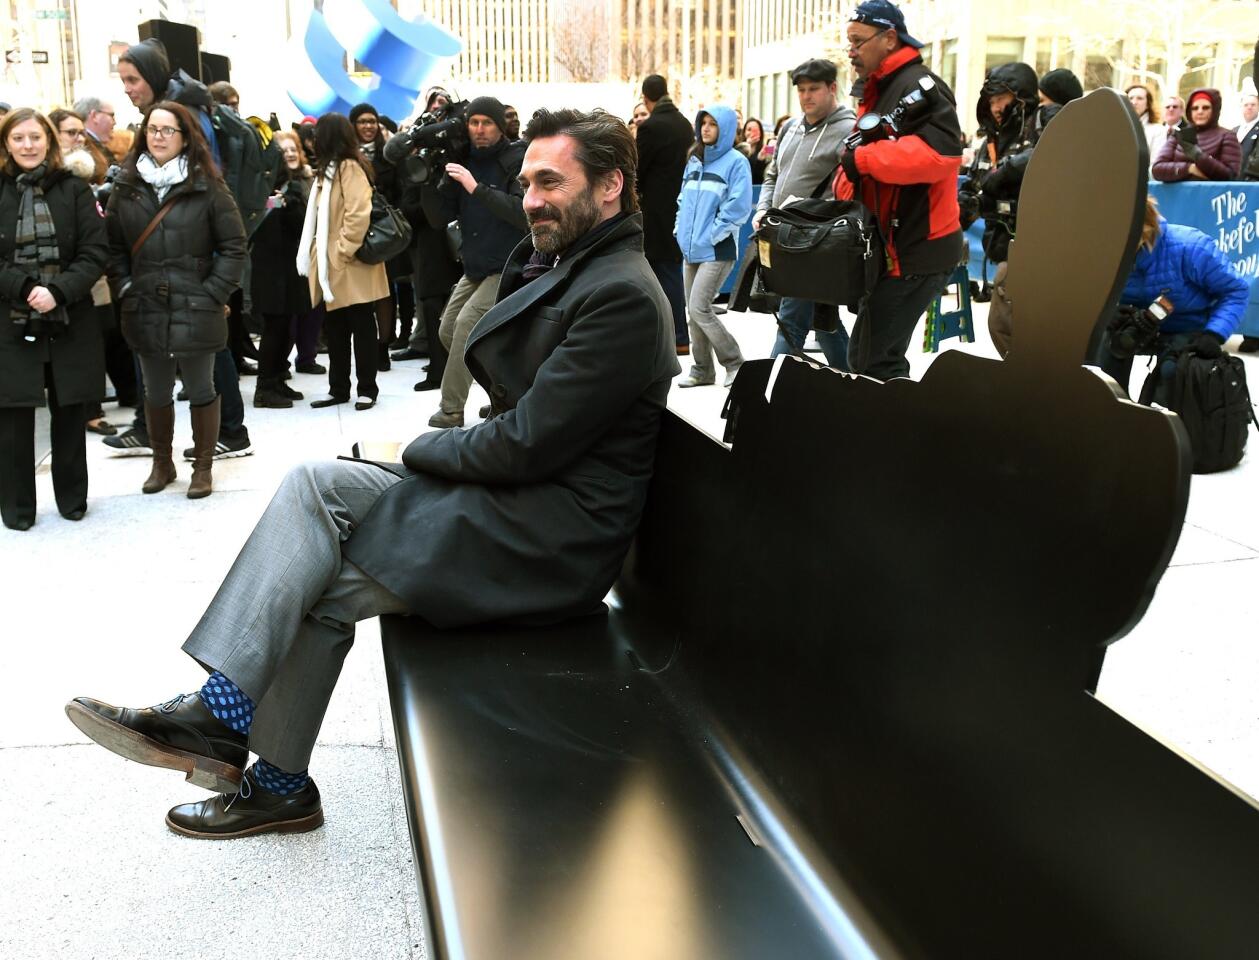 'Mad Men' selfie bench in NYC